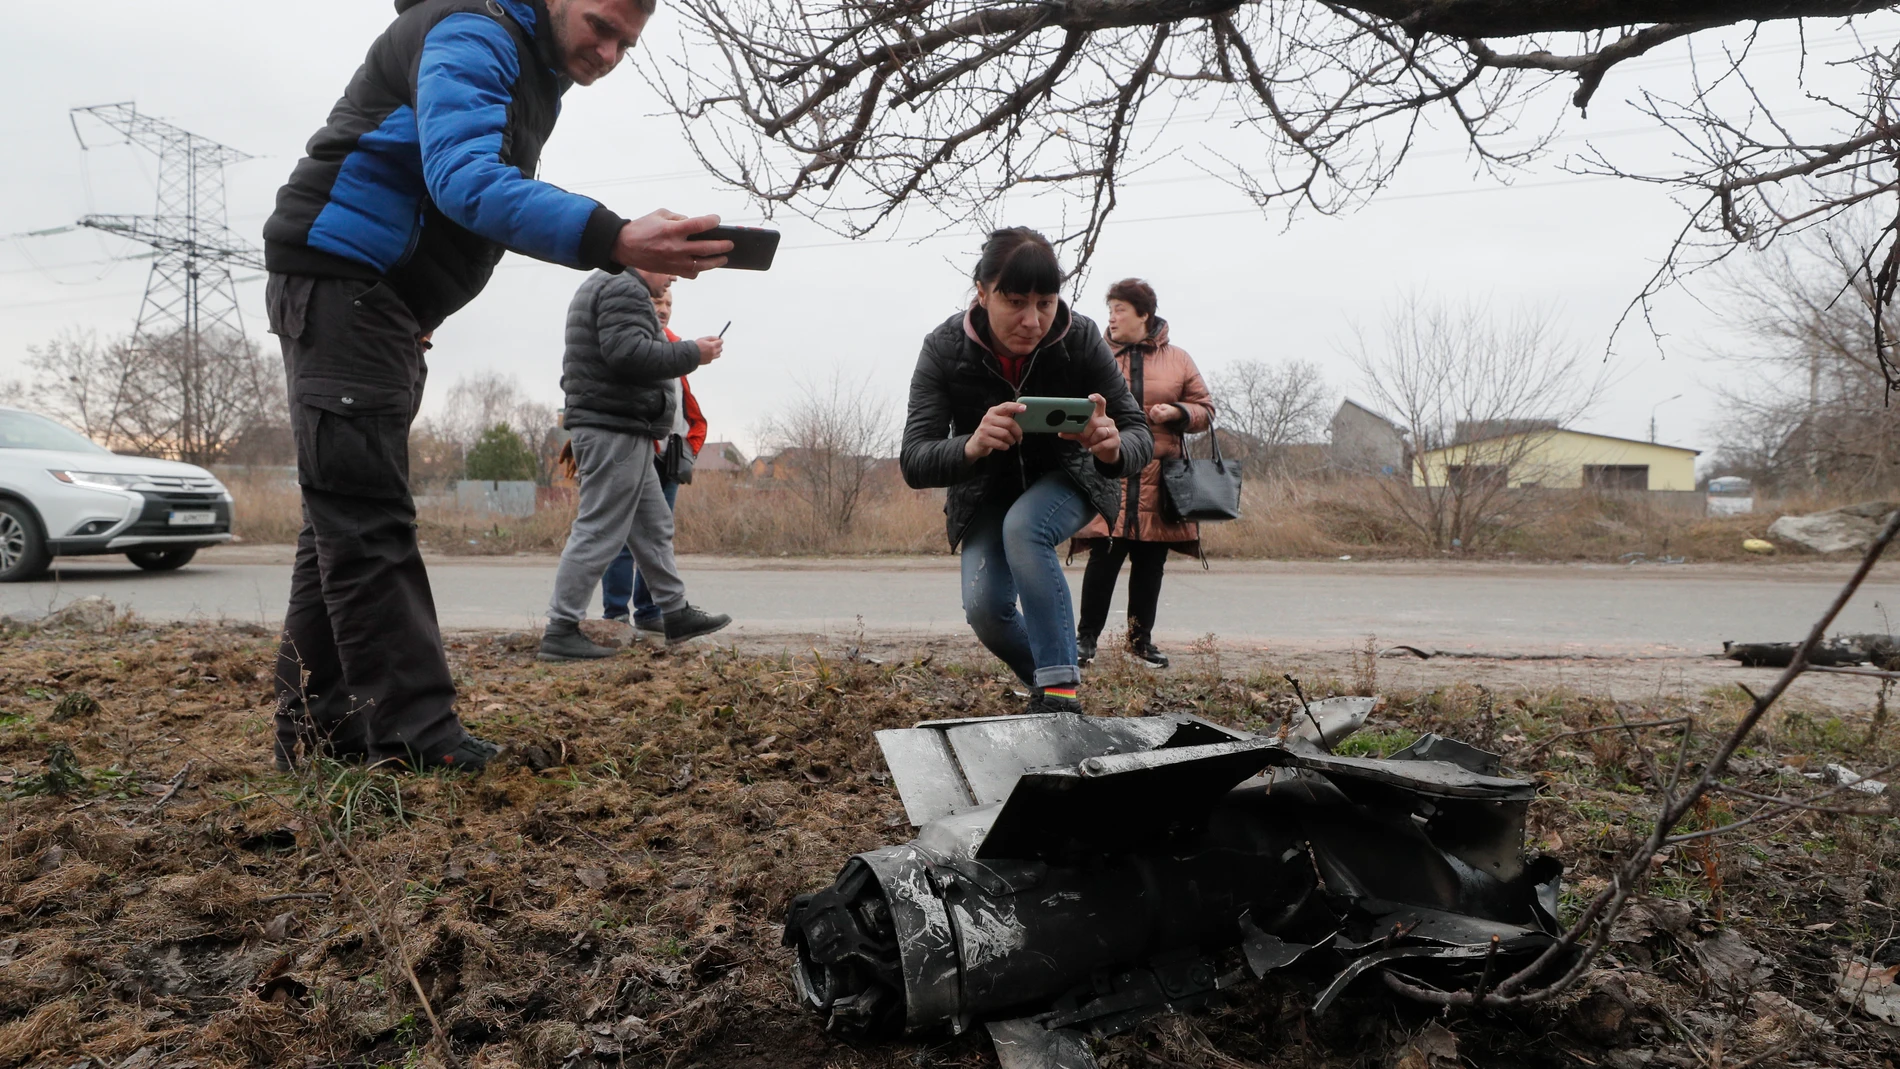 -FOTODELDIA- Kiev (Ucrania), 25/02/2022.- La gente toma fotografías de los restos de un cohete en la calle después del bombardeo nocturno en Kiev (Kyiv), Ucrania, 25 de febrero de 2022. Las tropas rusas entraron en Ucrania el 24 de febrero incitando al presidente del país para declarar la ley marcial. (Rusia, Ucrania) EFE/SERGEY DOLZHENKO